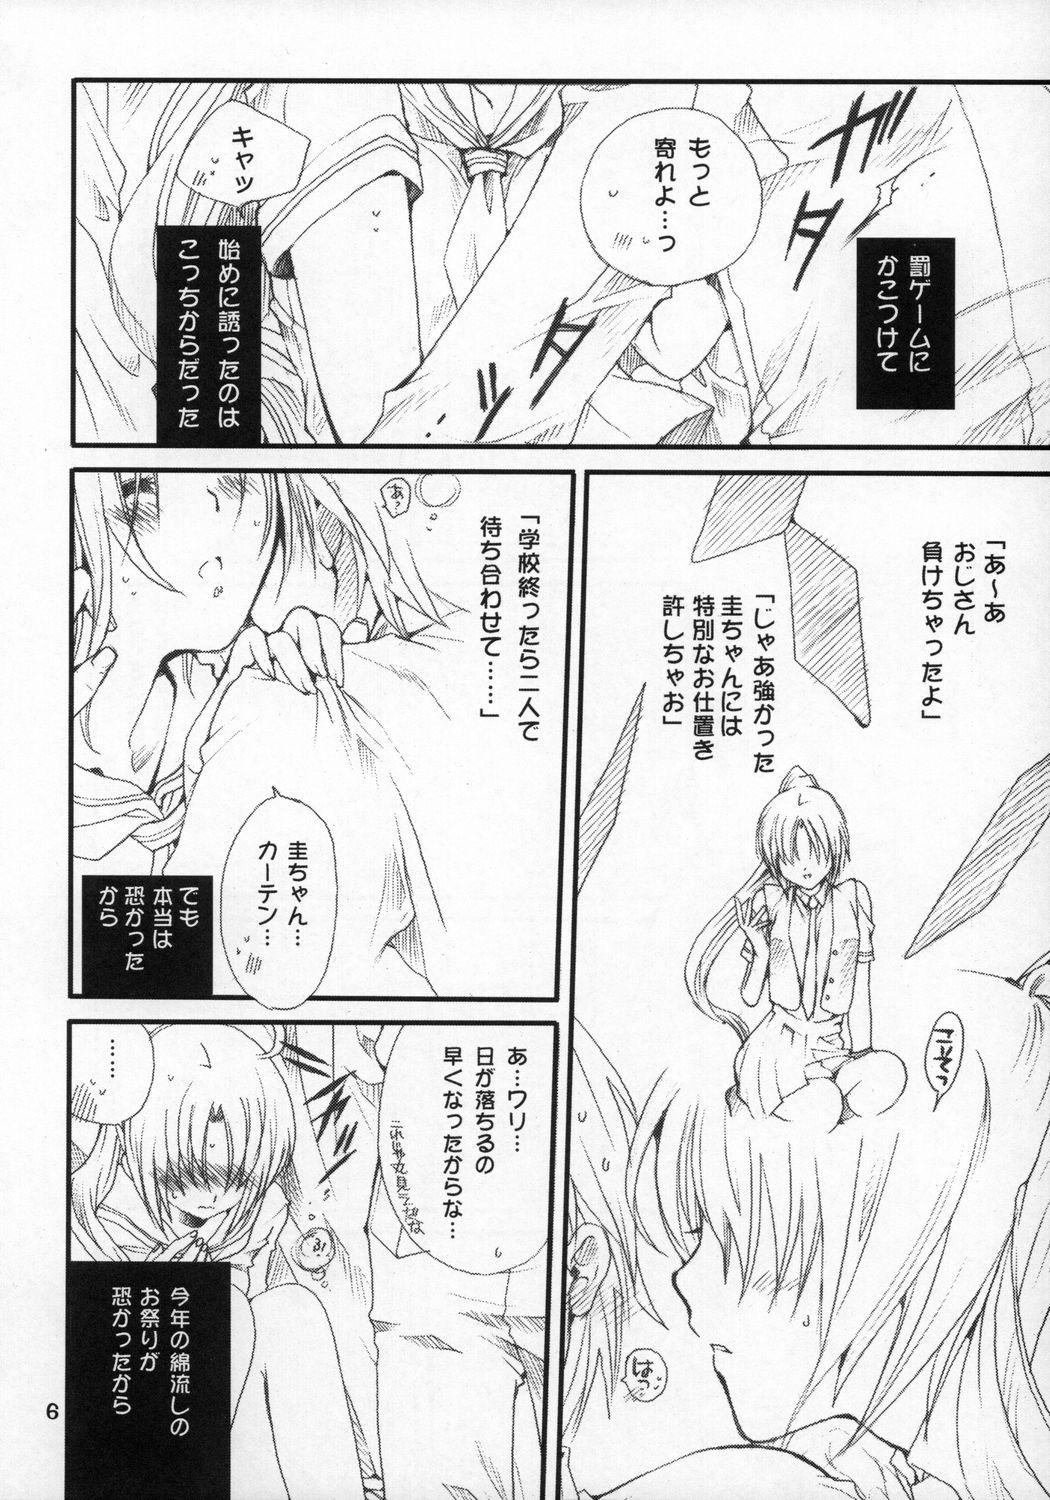 Speculum Mion-san Ganbaru! - Higurashi no naku koro ni Black - Page 5